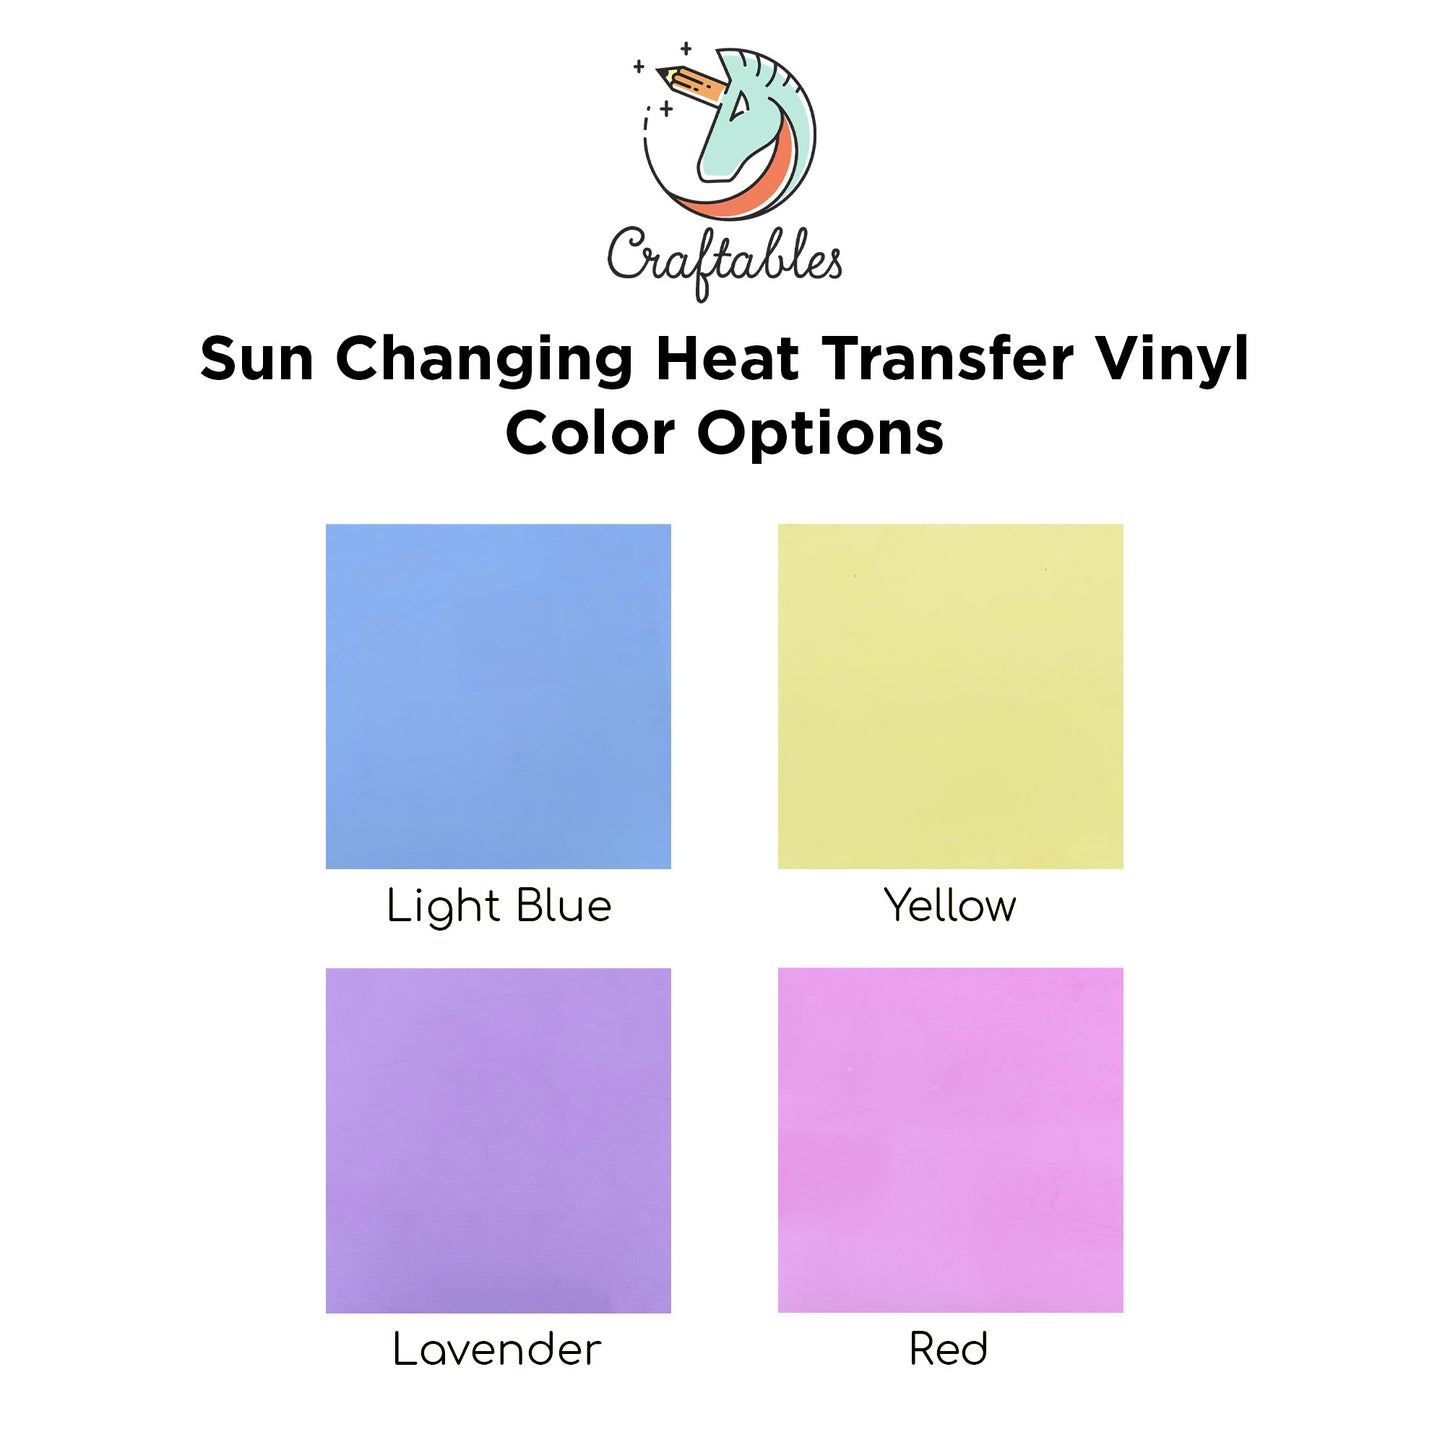 Light Blue Light Changing Heat Transfer Vinyl Rolls By Craftables